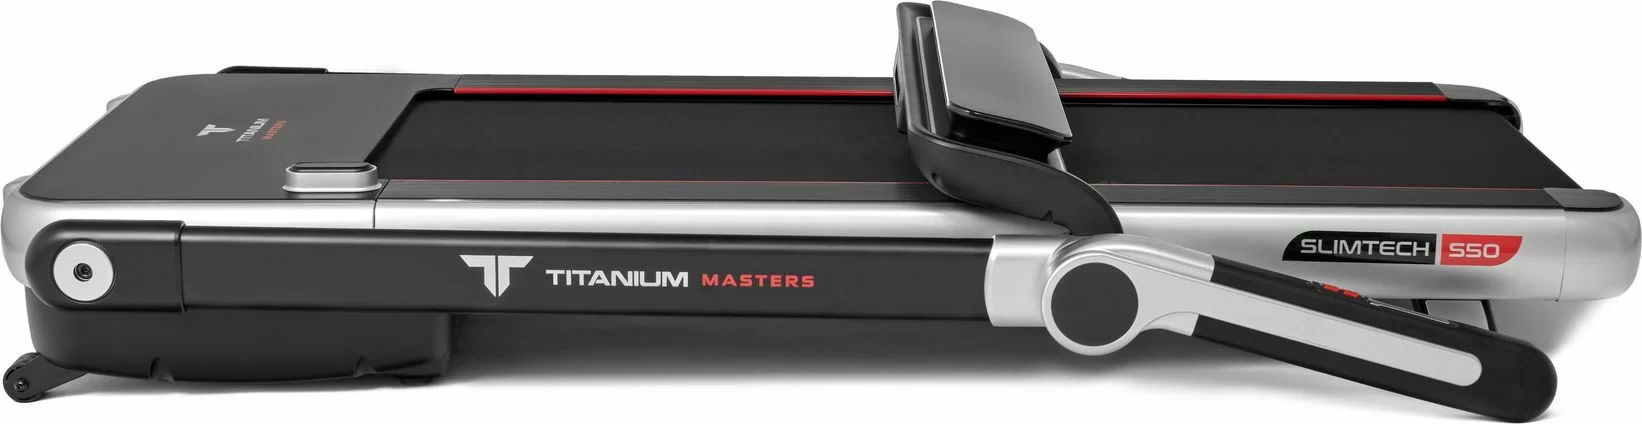 Реальное фото Беговая дорожка Titanium Masters Slimtech S50 от магазина СпортСЕ